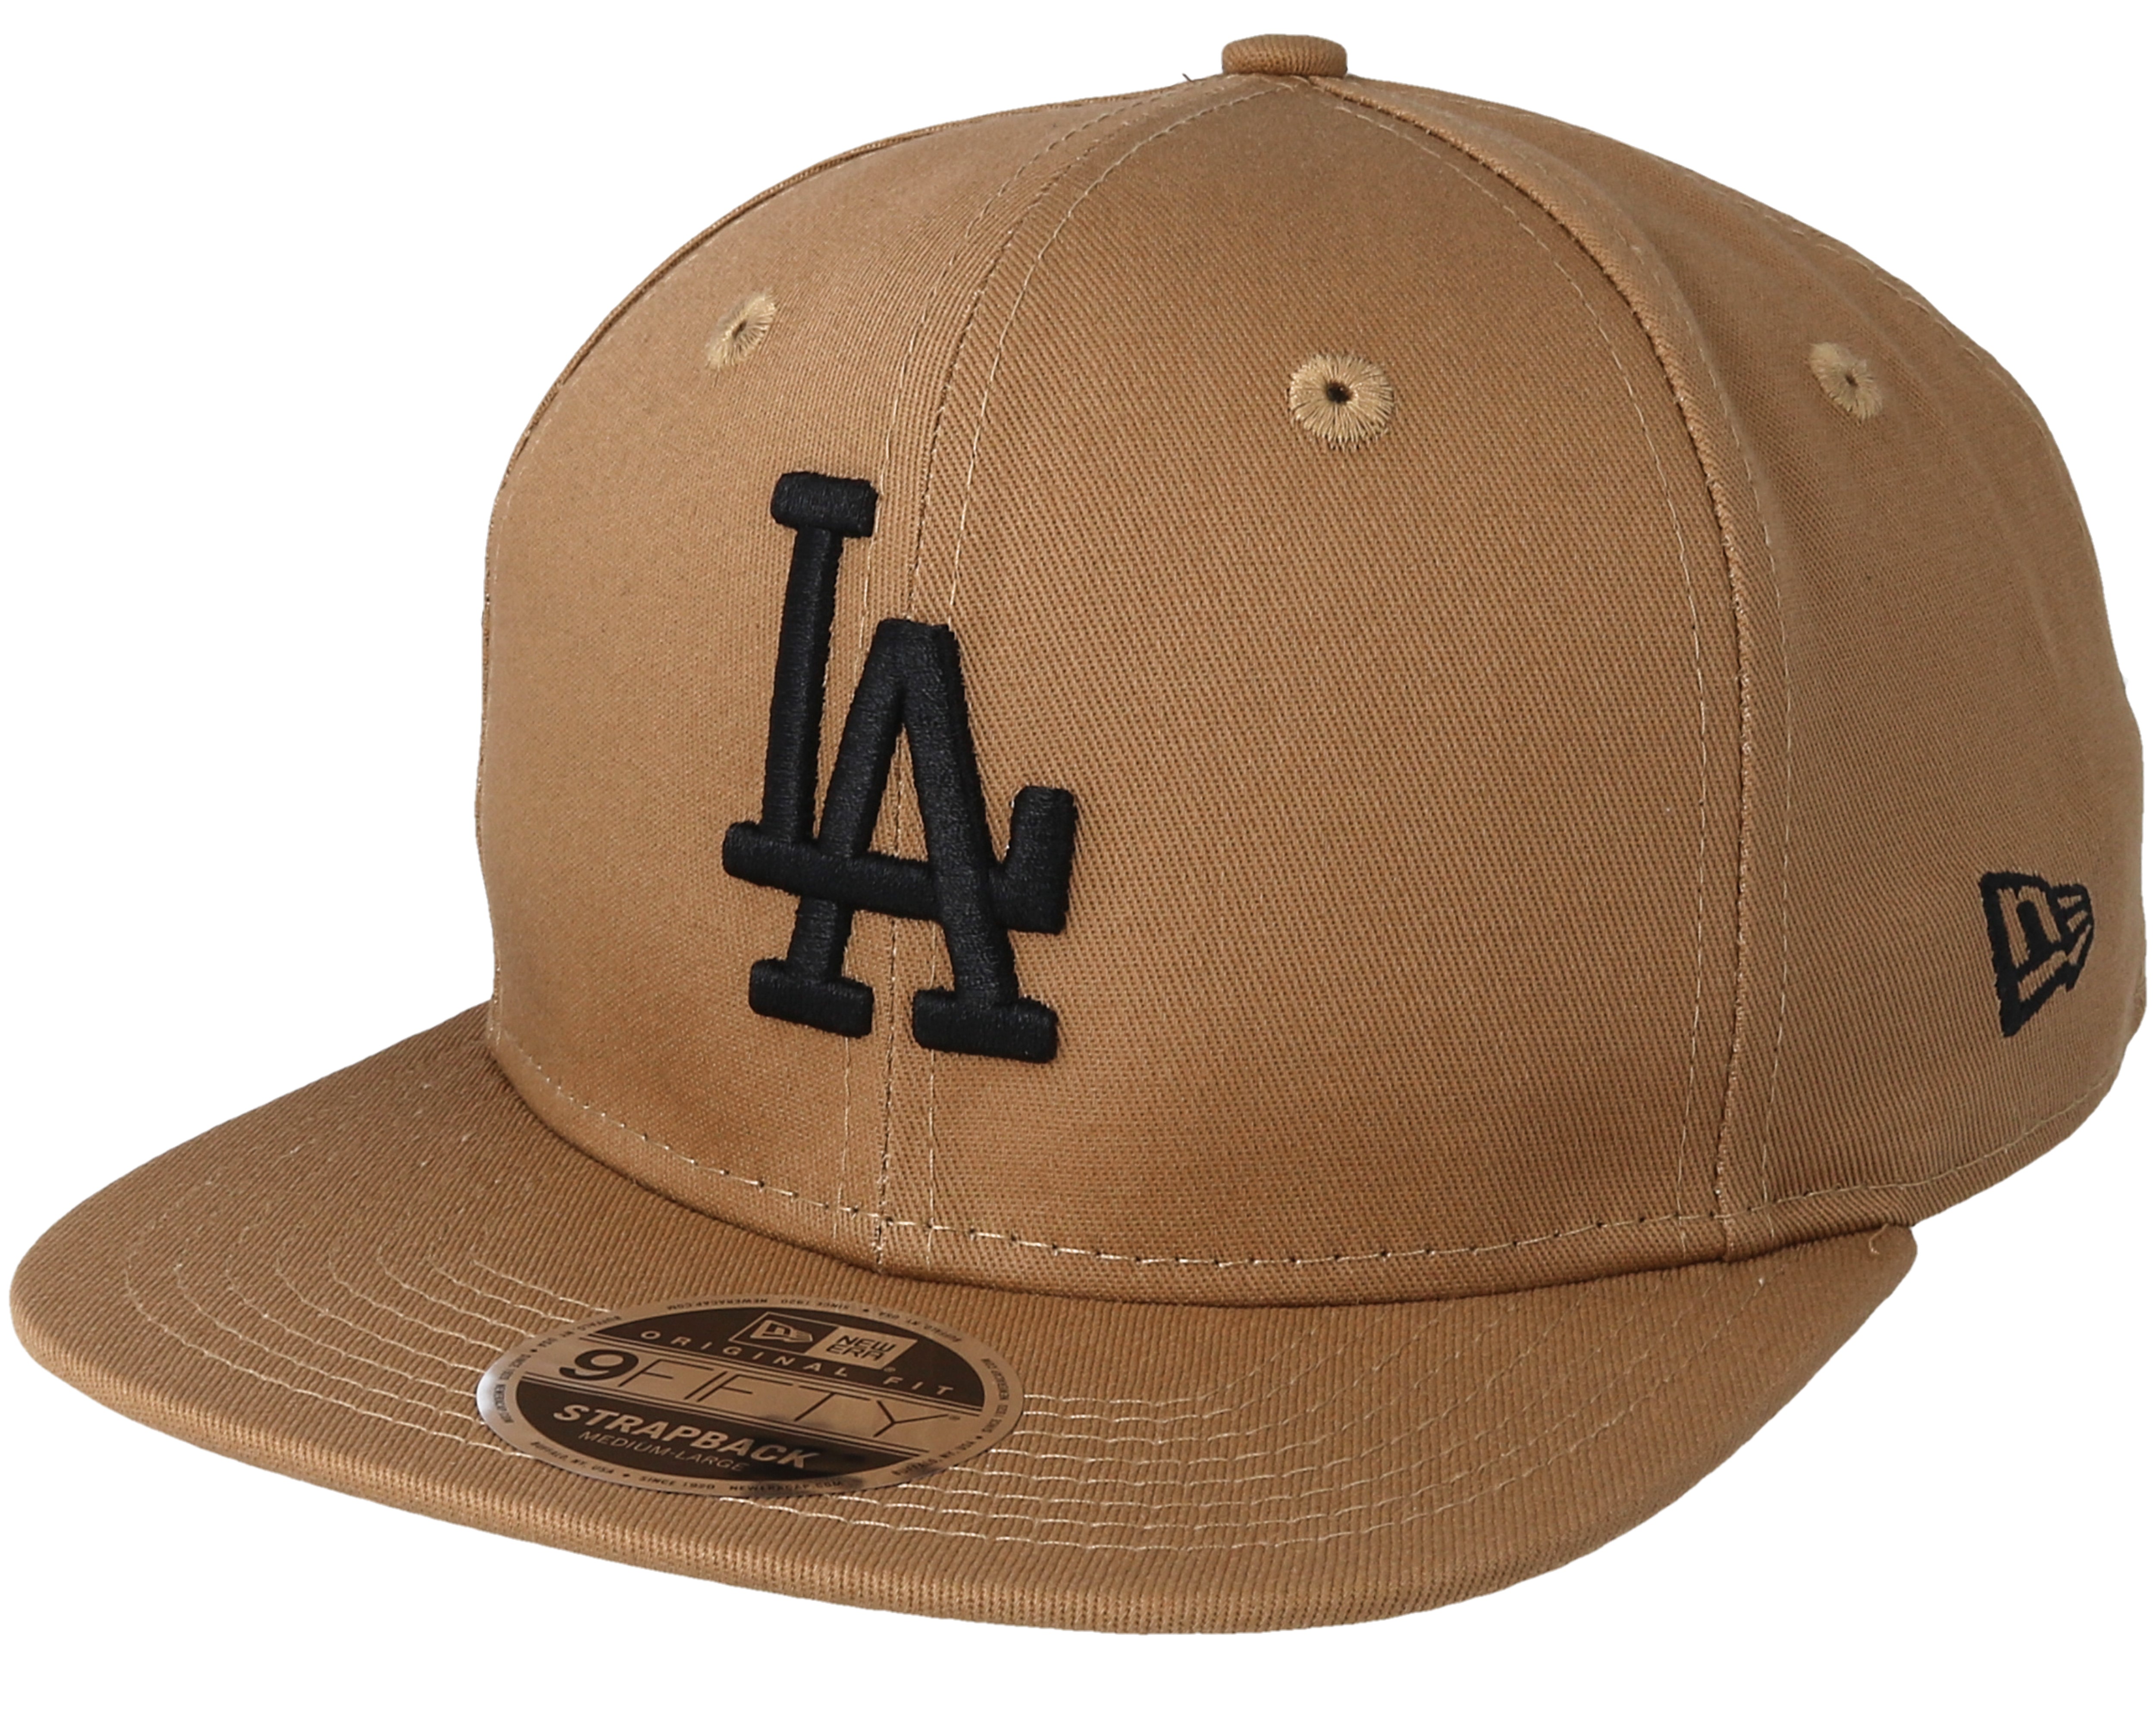 La hat. 9 Fifty бейсболка New era хаки. New era cap. Бежевая кепка la Dodgers бежевые. La Dodgers Snapback.